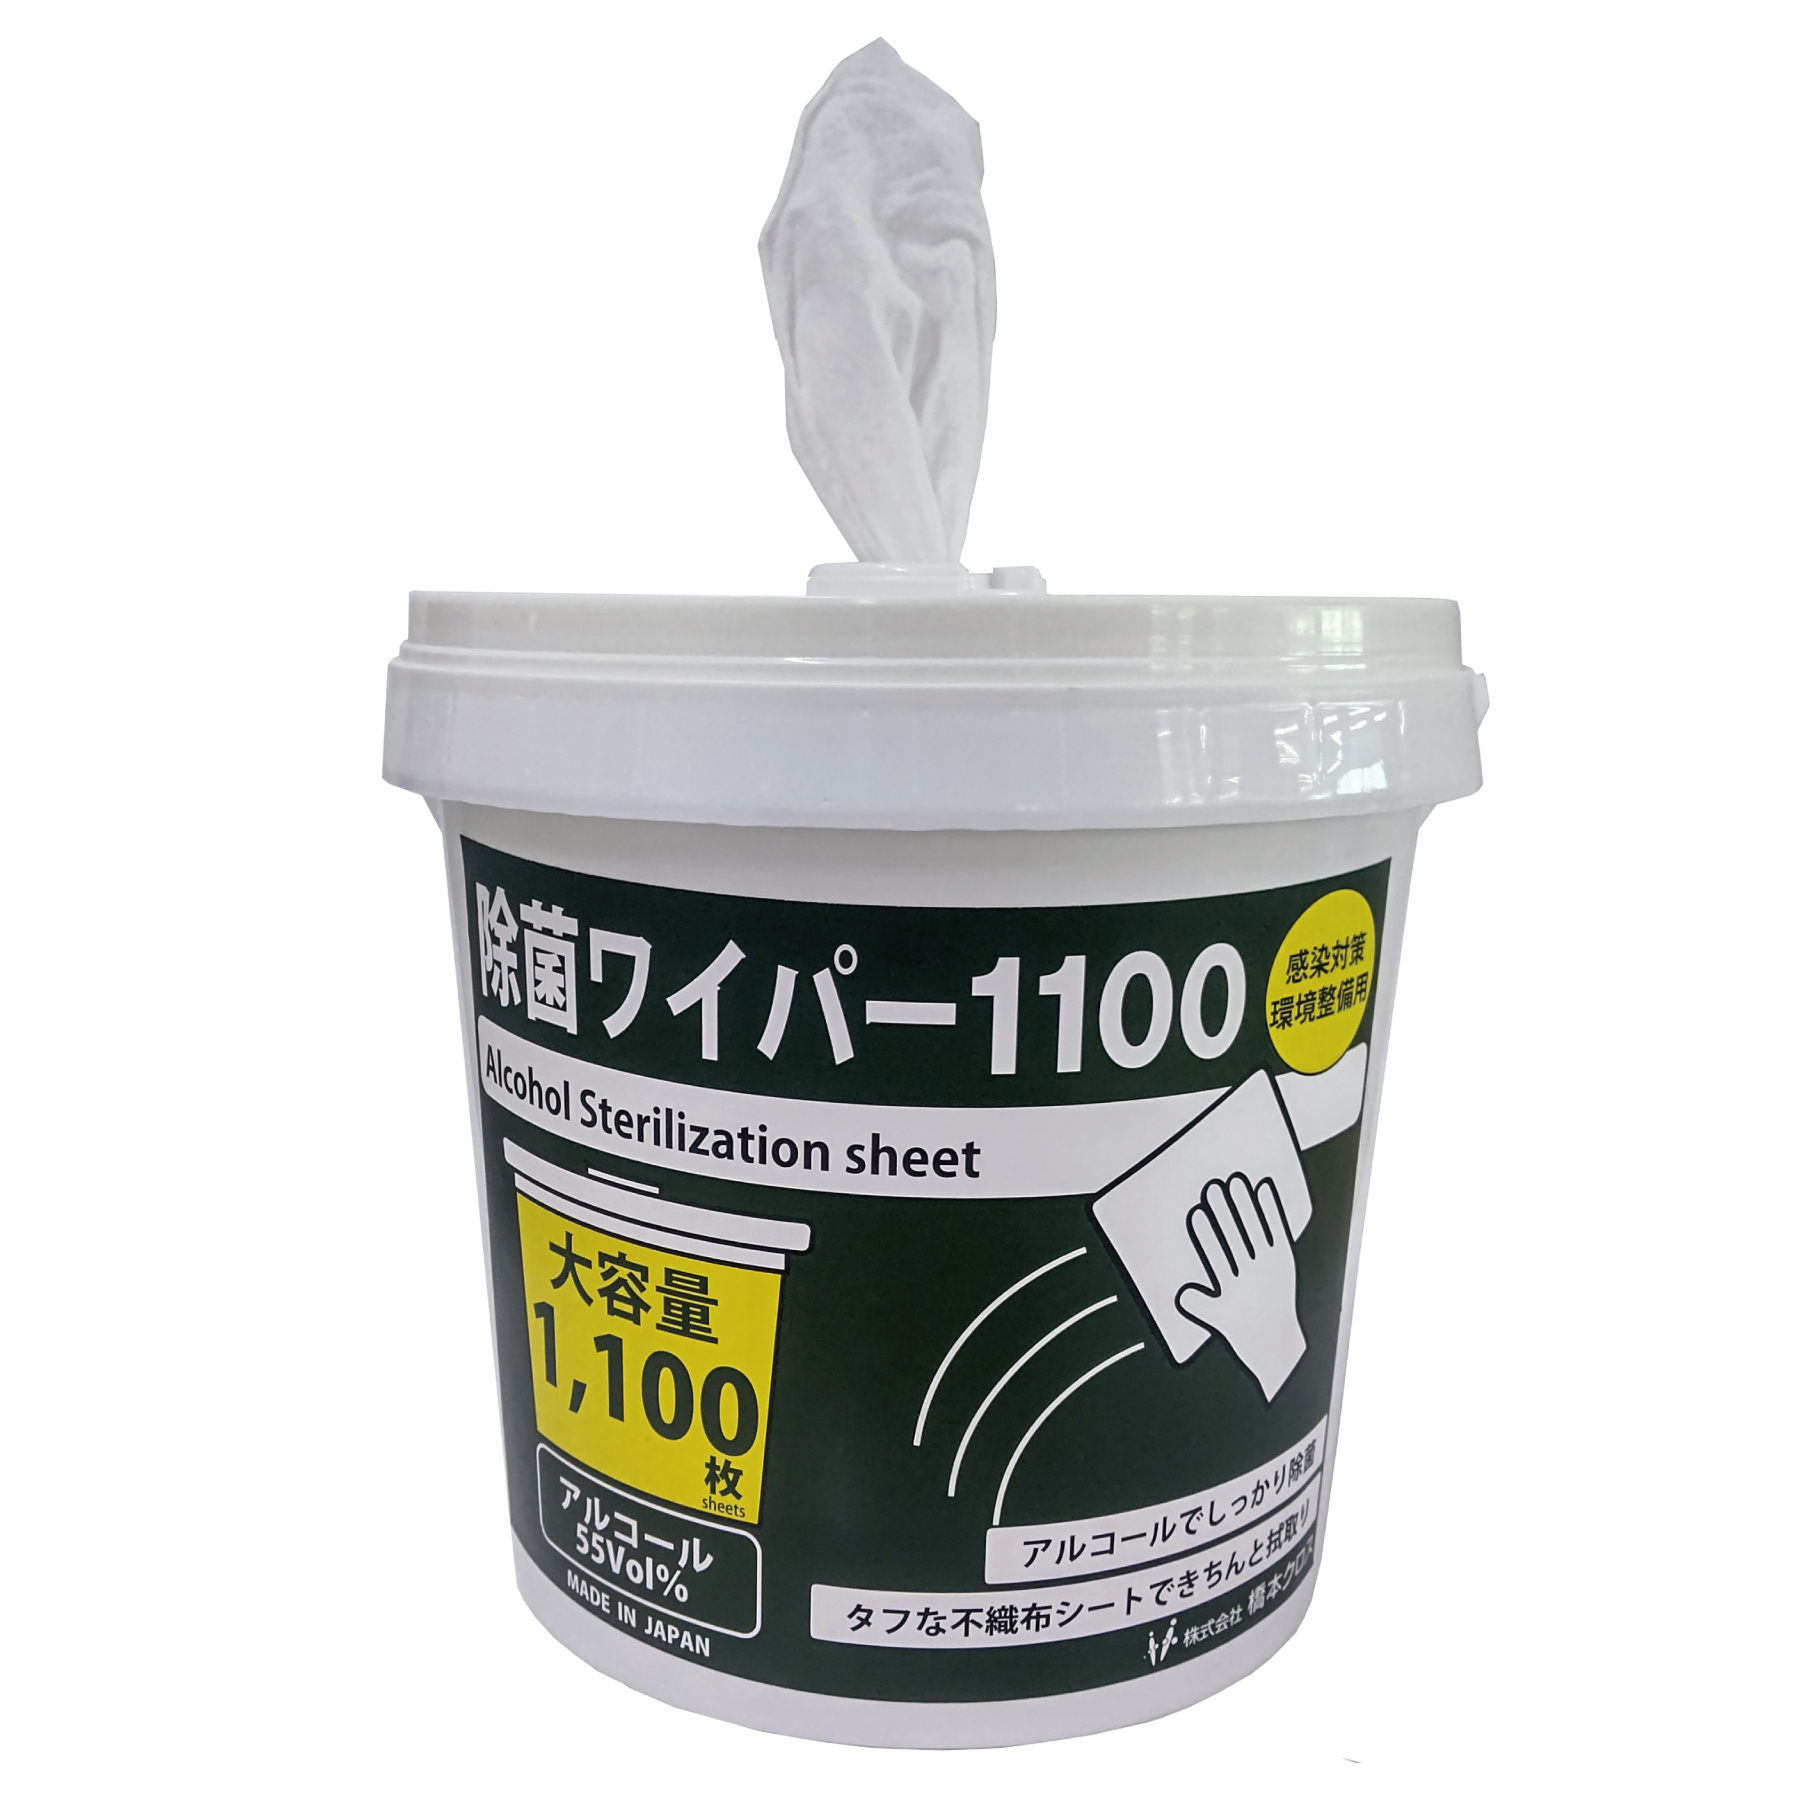 除菌ワイパー1100 | 株式会社 橋本クロス HASHIMOTO CLOTH